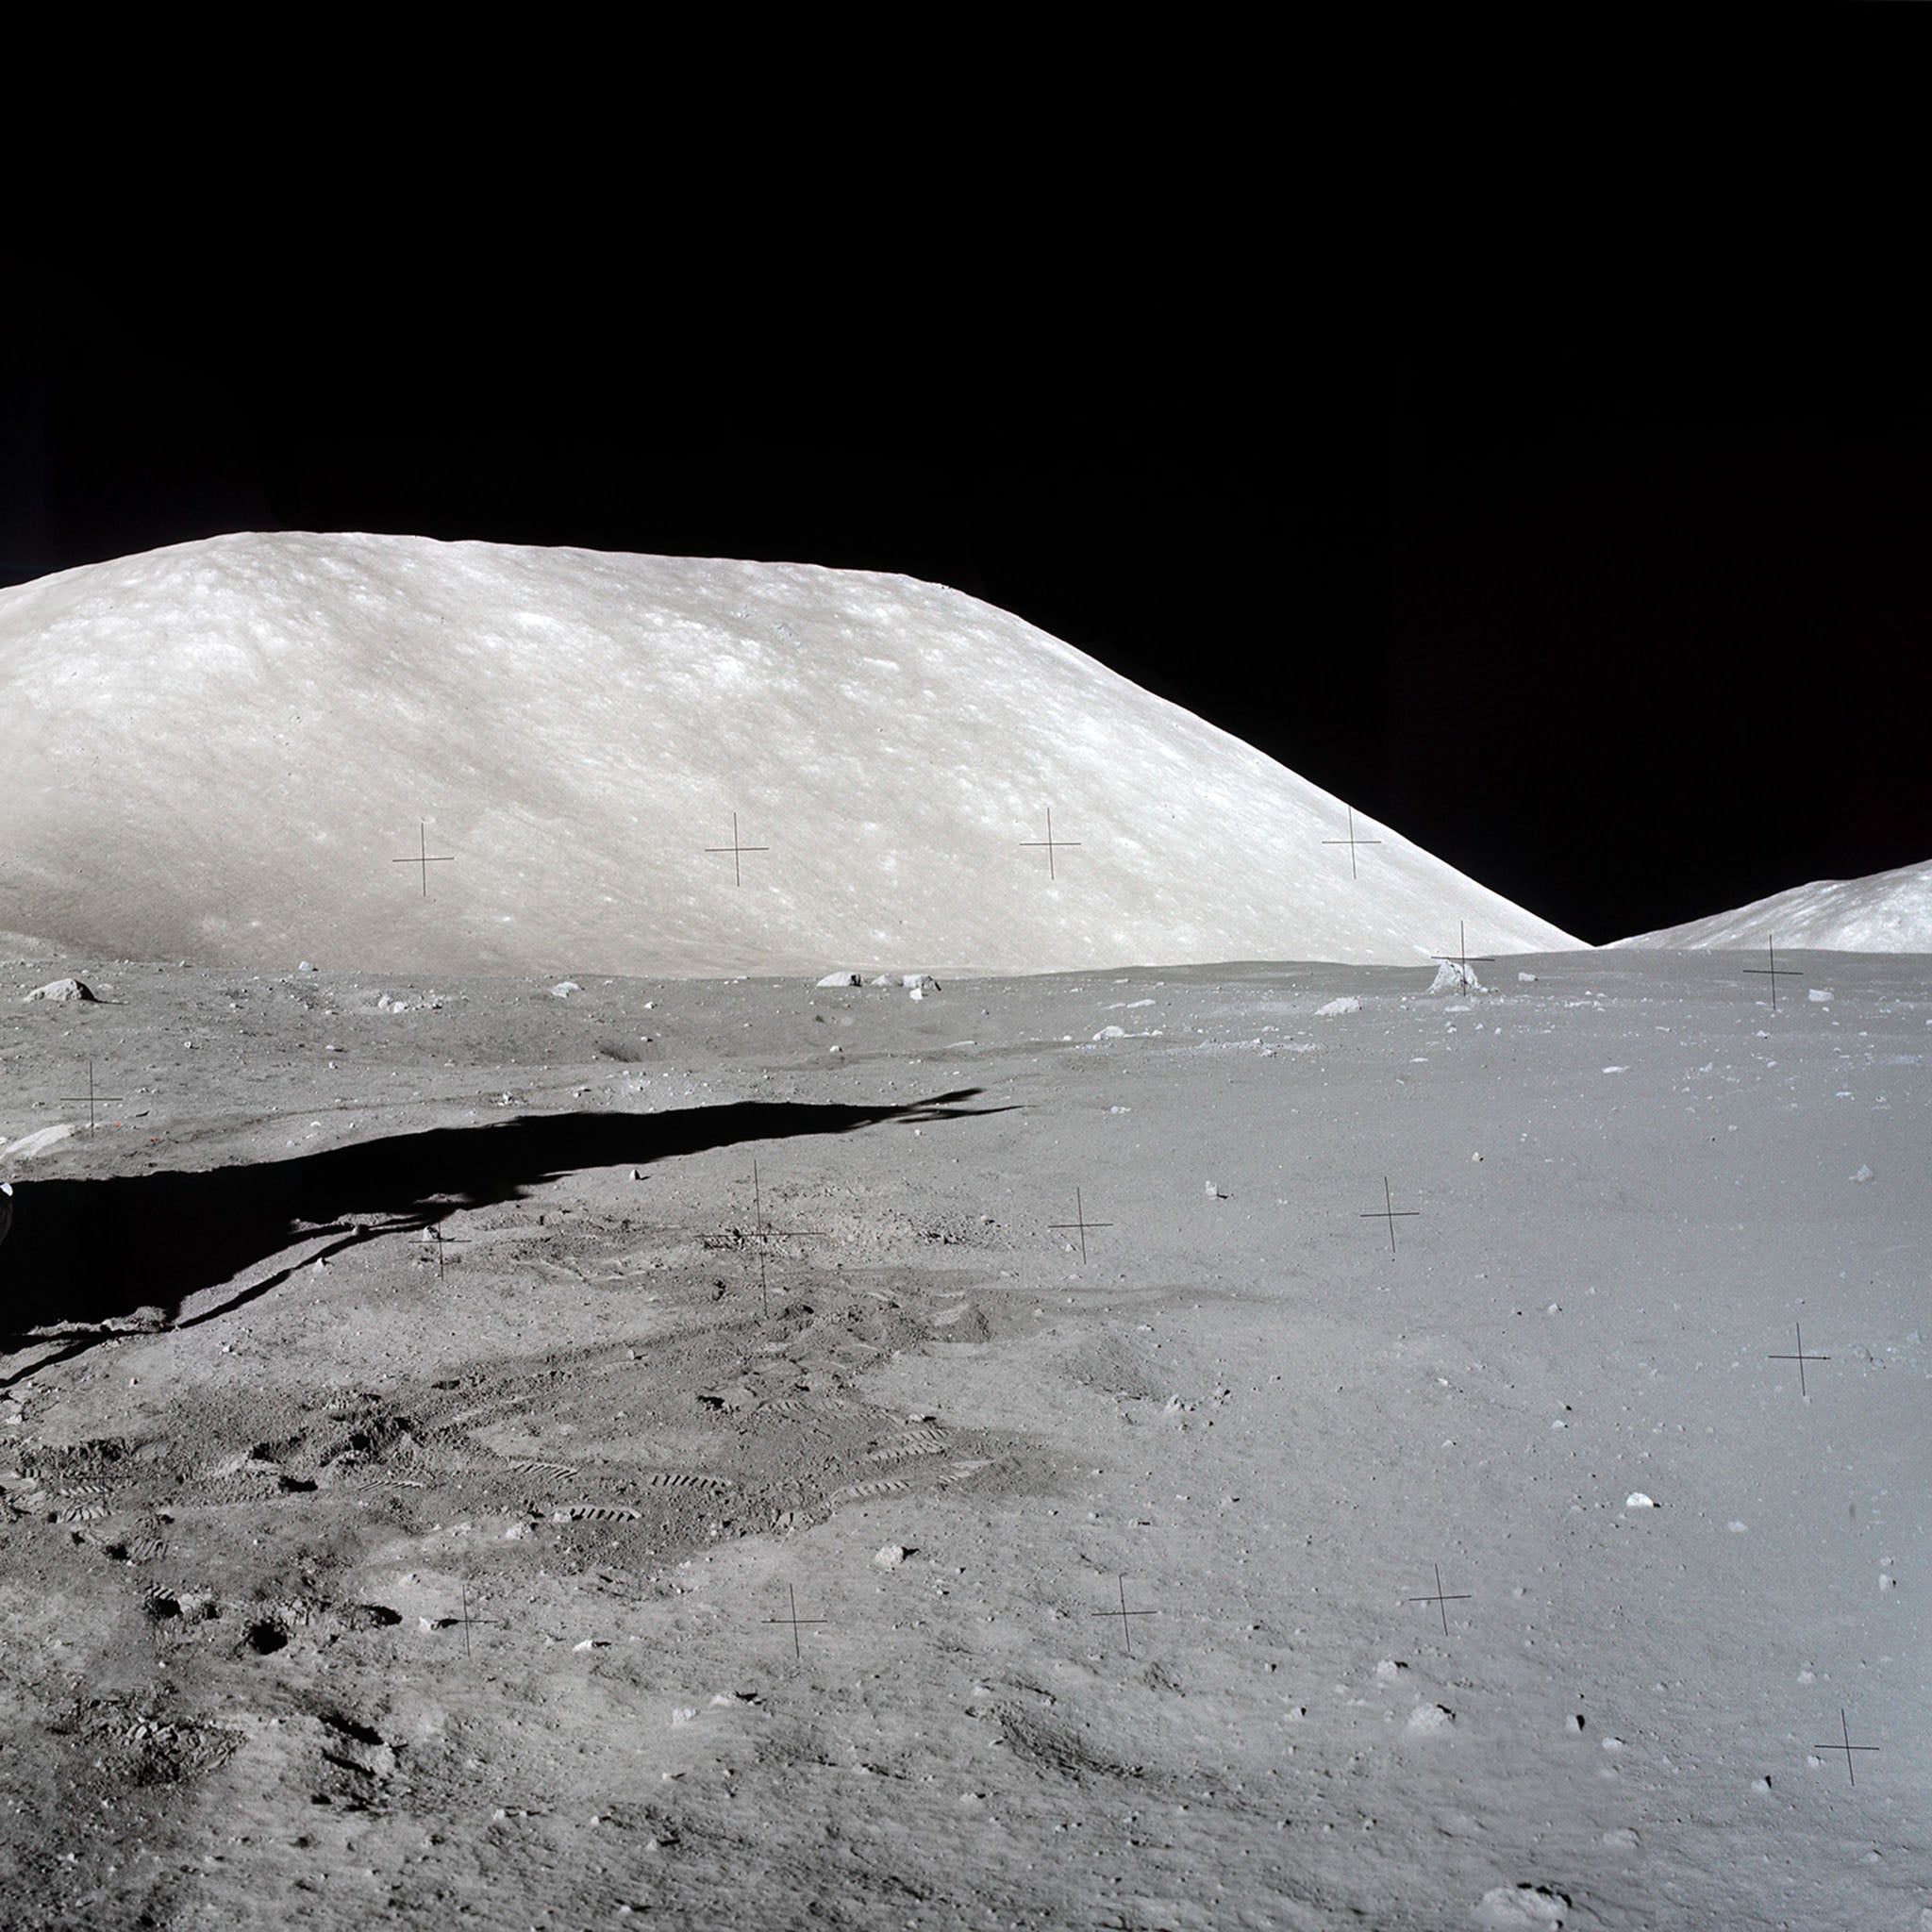 Apollo 17 w Słońcu